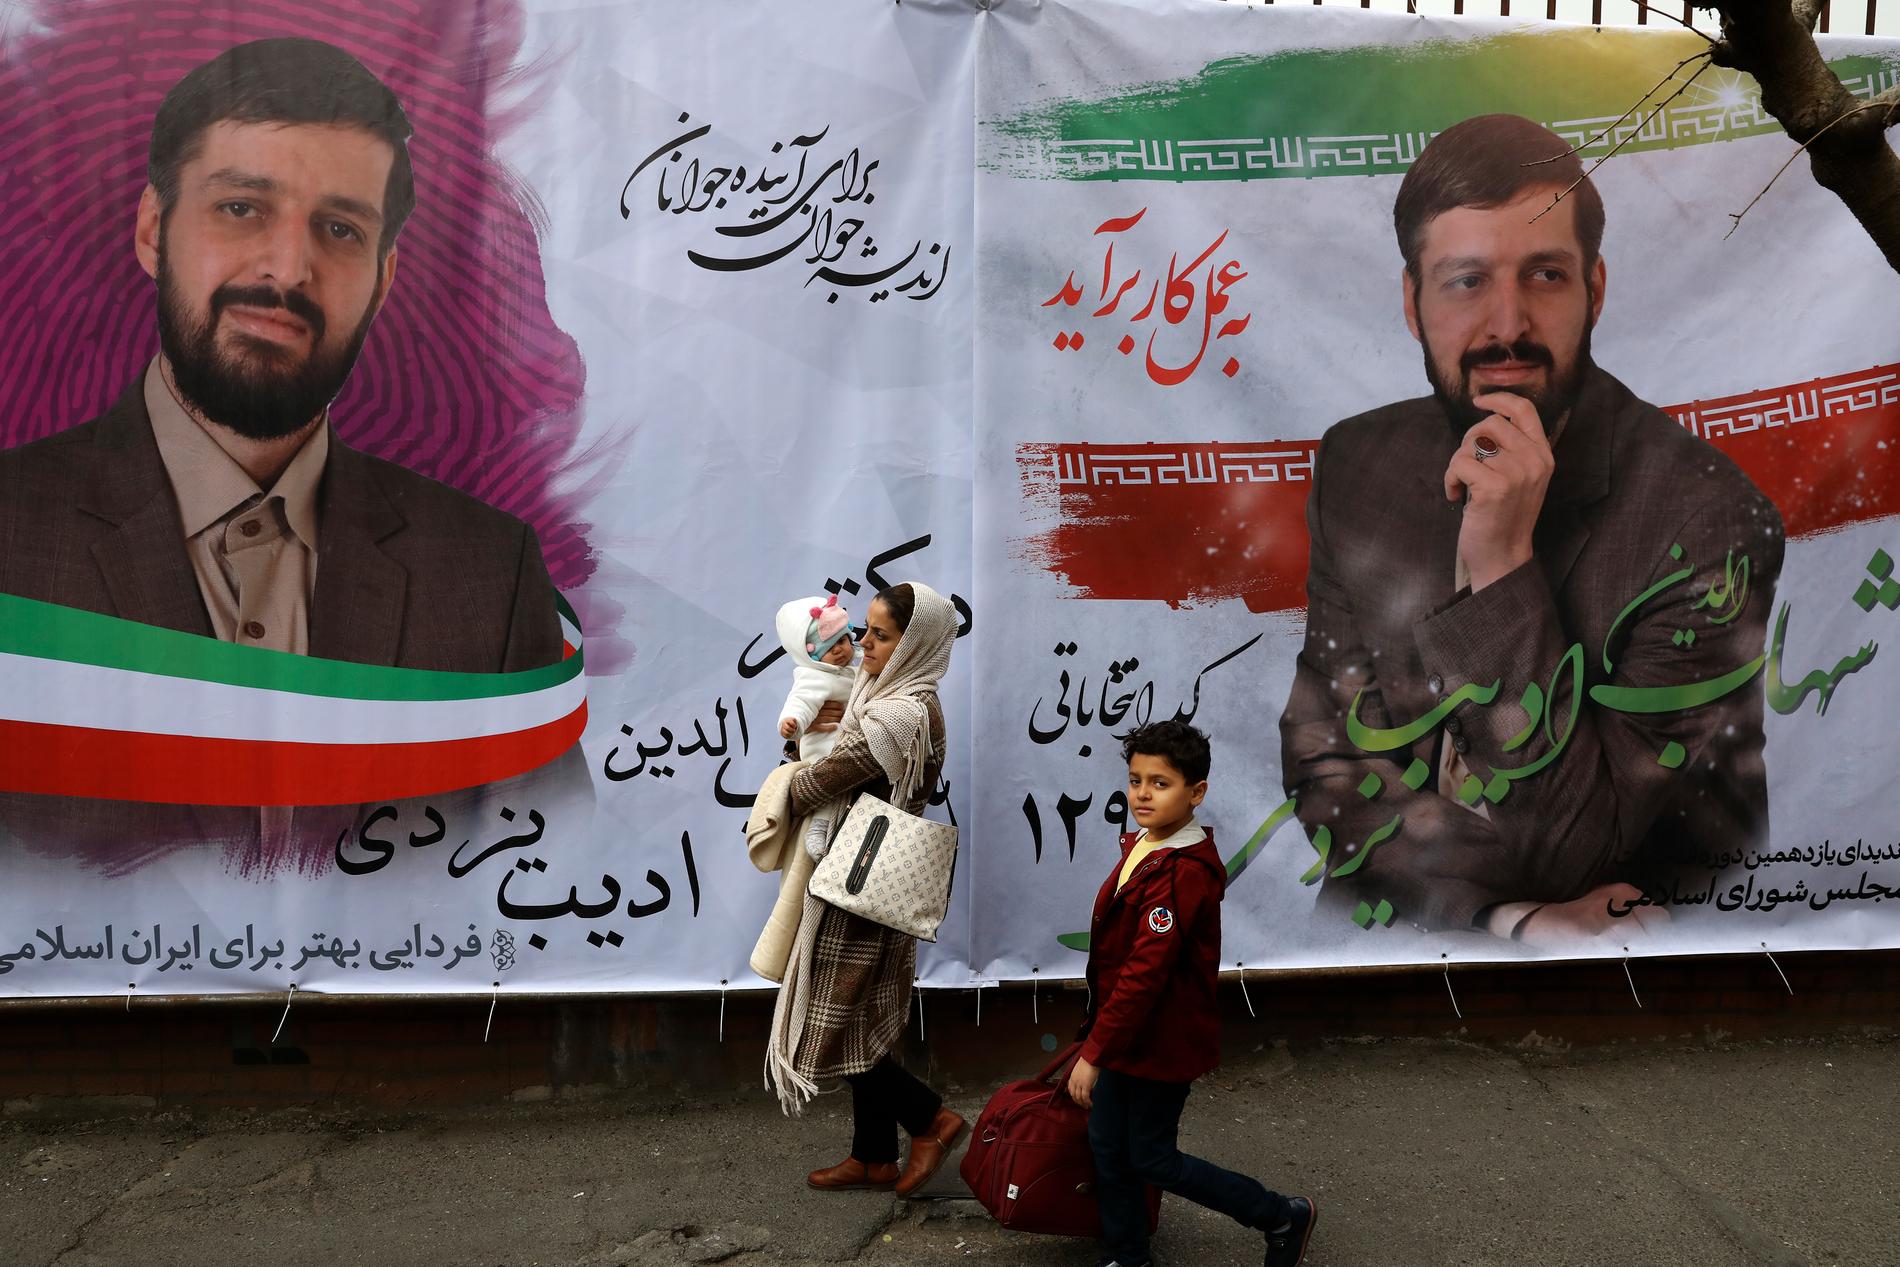 Teheran-bor passerar valaffischer för en kandidat, Shahabeddin Adib Yazdi, i den iranska huvudstaden.